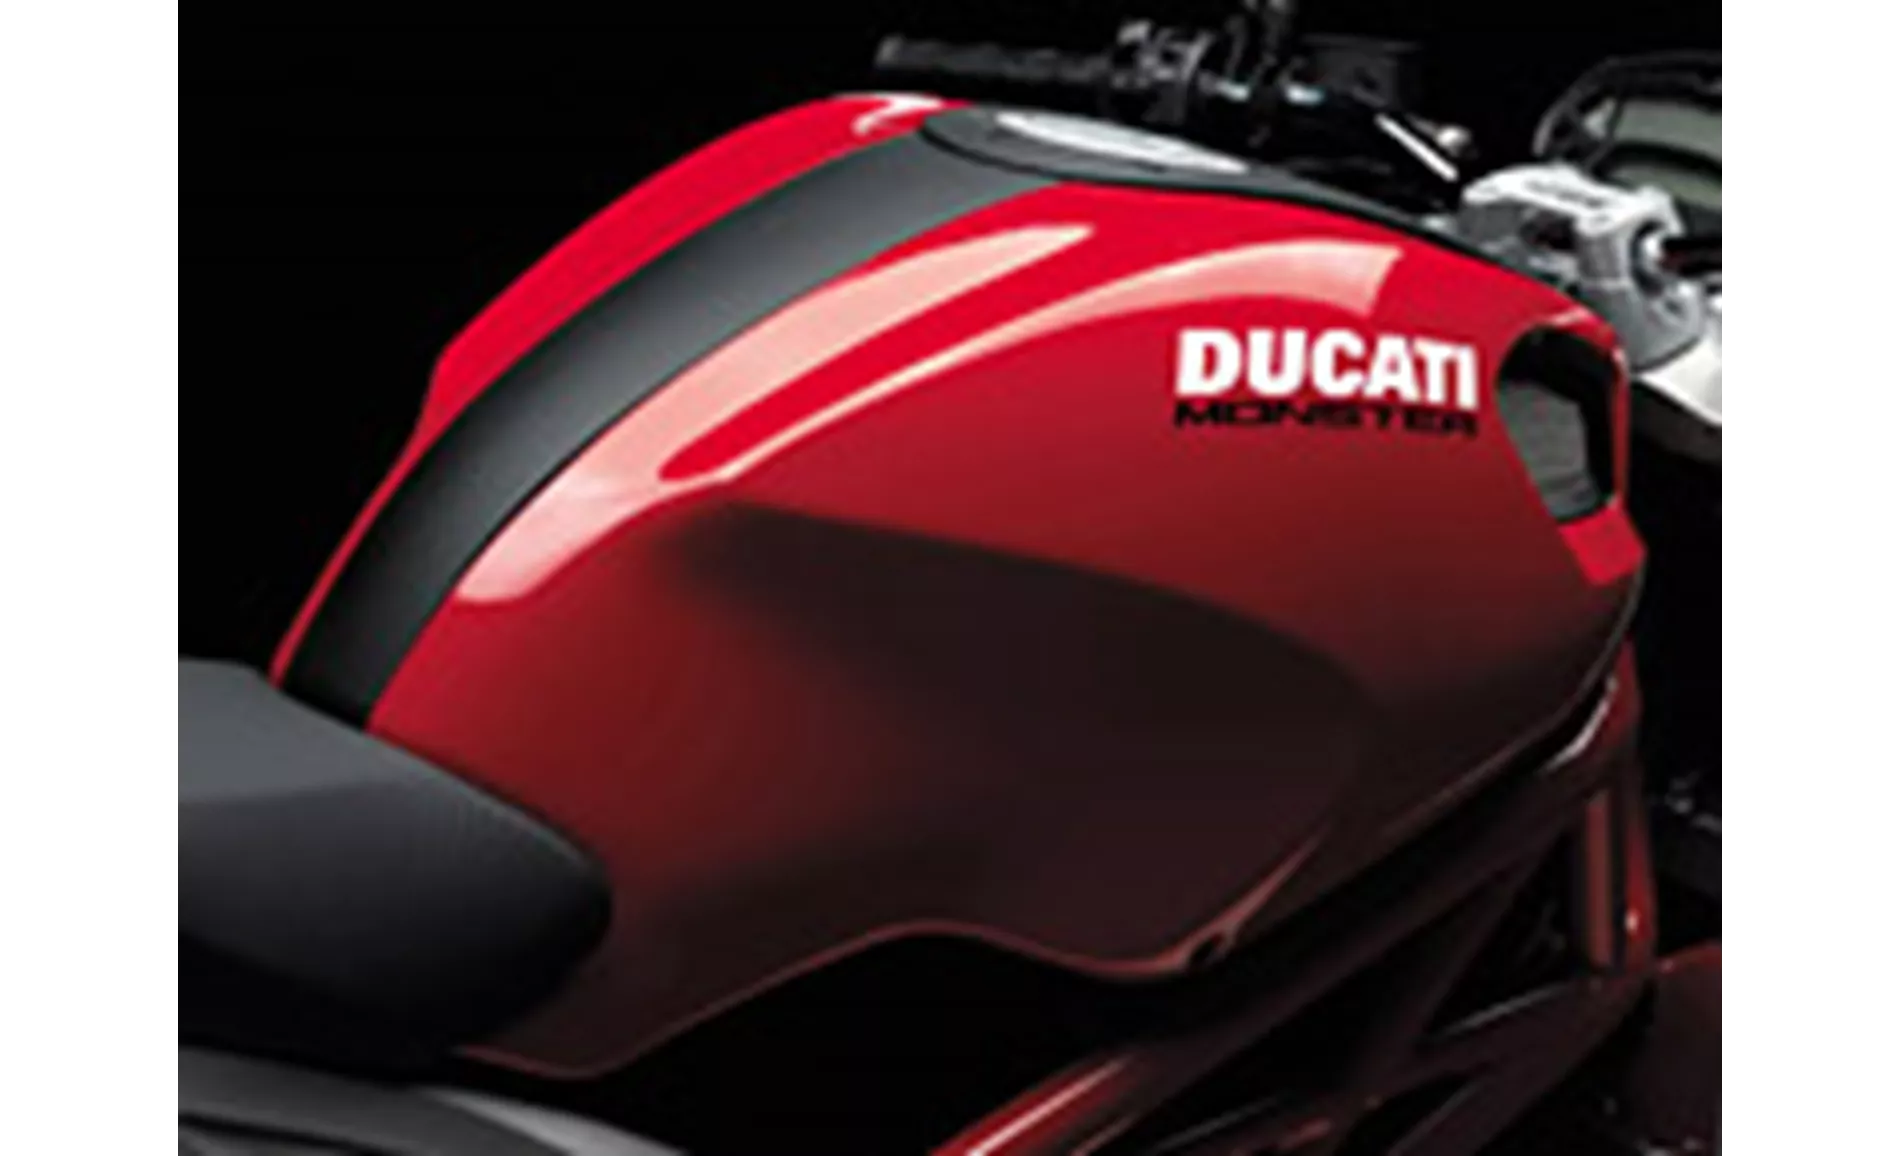 Ducati Monster 696 2012